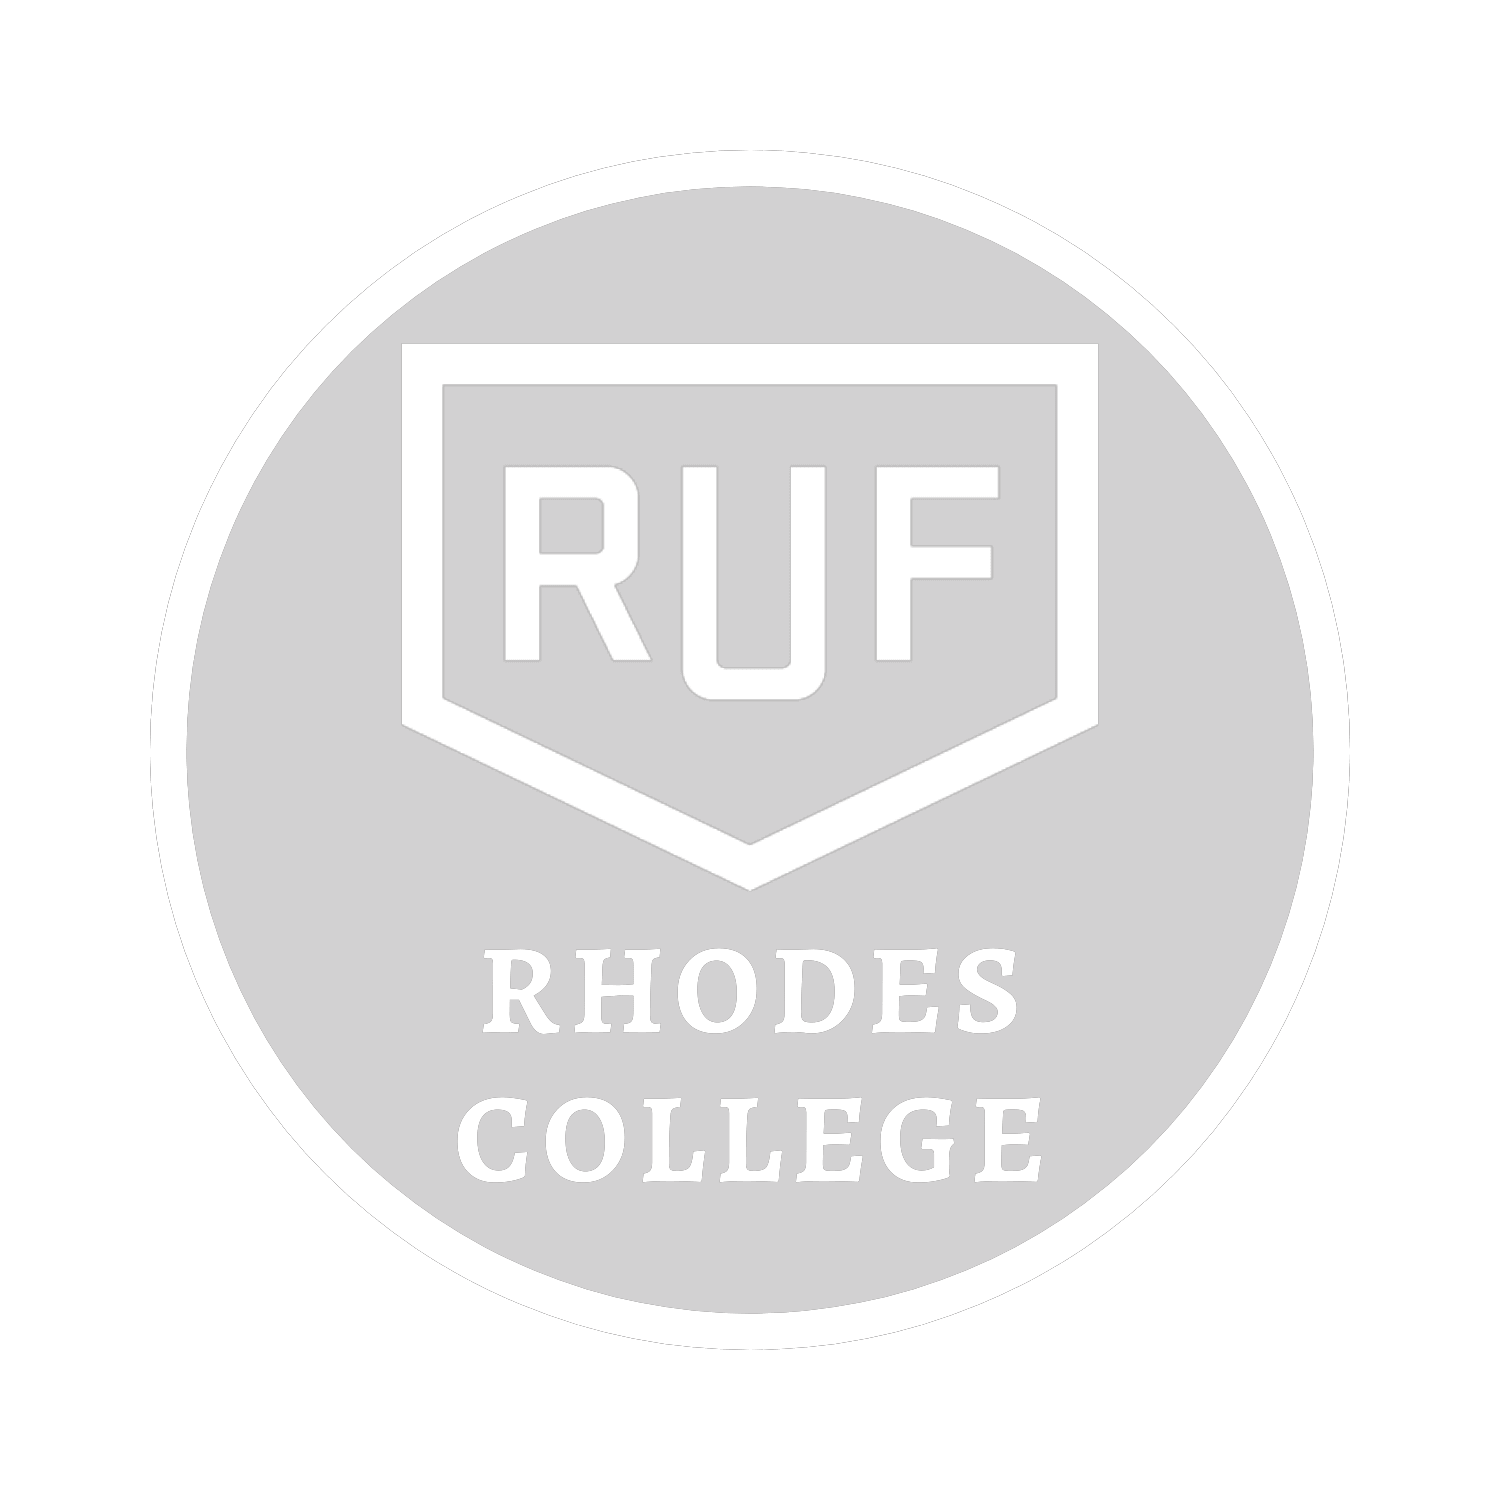 RUF at Rhodes College